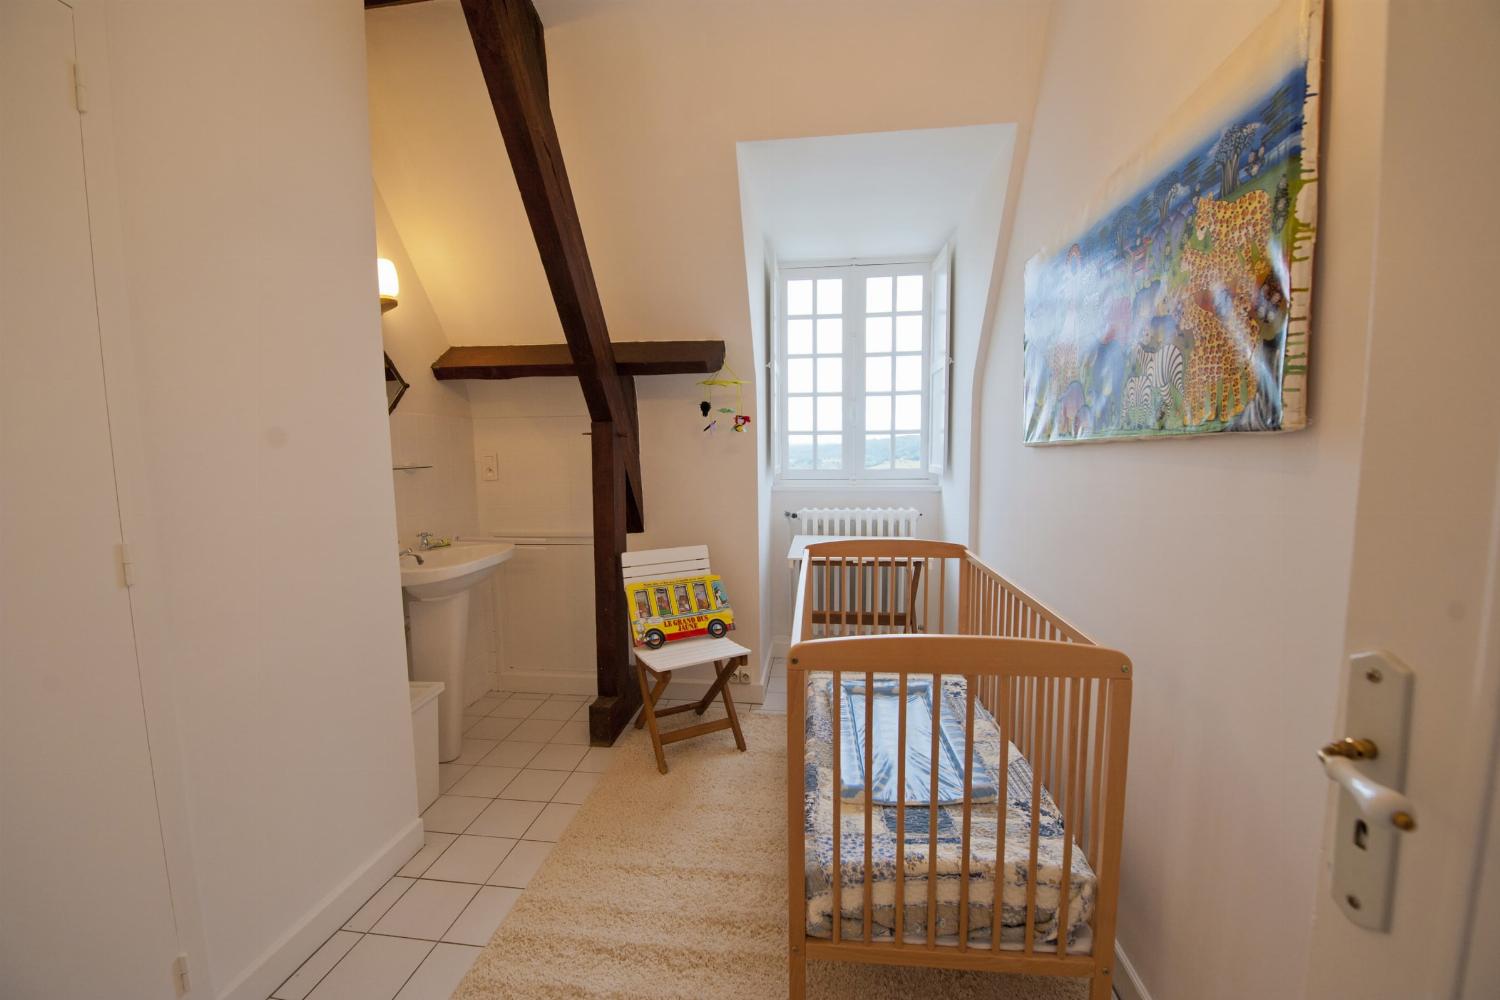 Bedroom | Rental accommodation in Dordogne